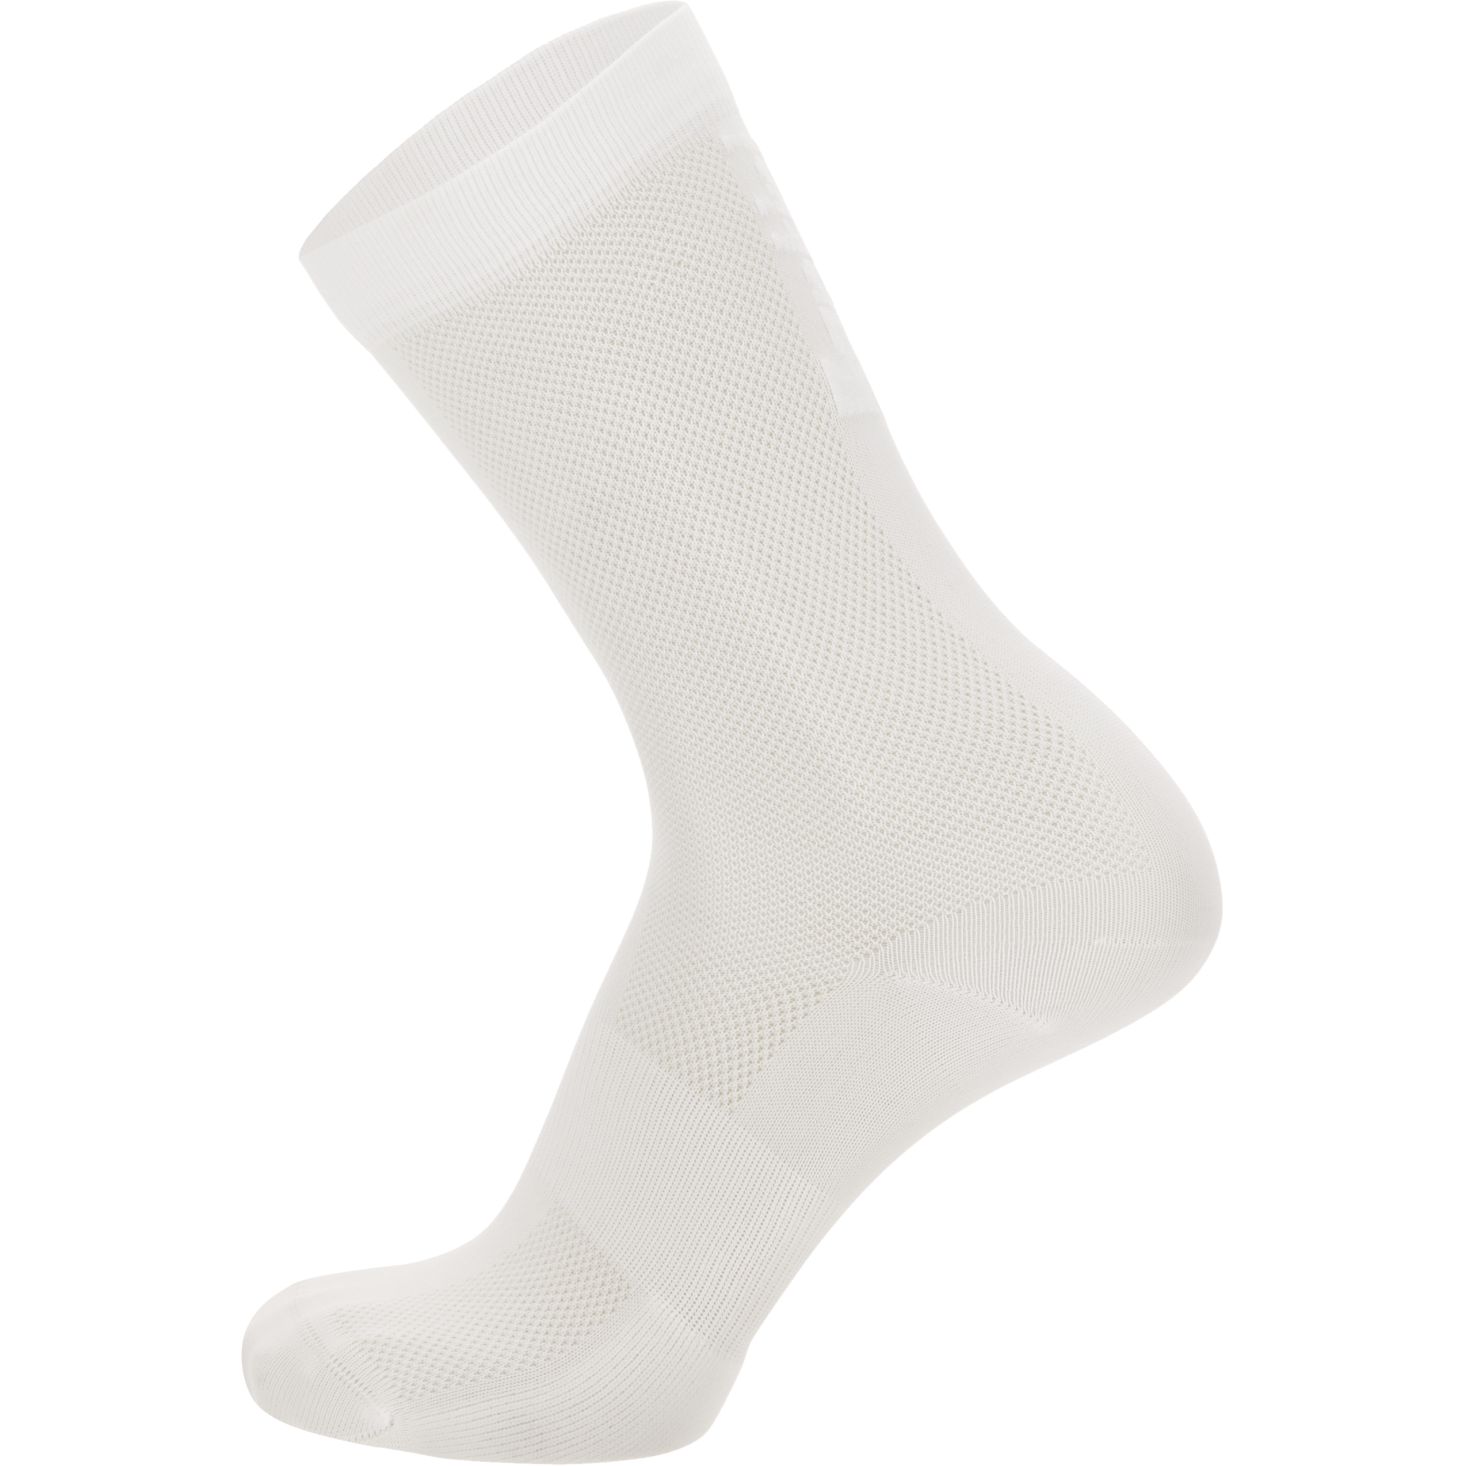 Produktbild von Santini Puro High Profile Socken 1S652QSKPURO - weiß/weiß BB